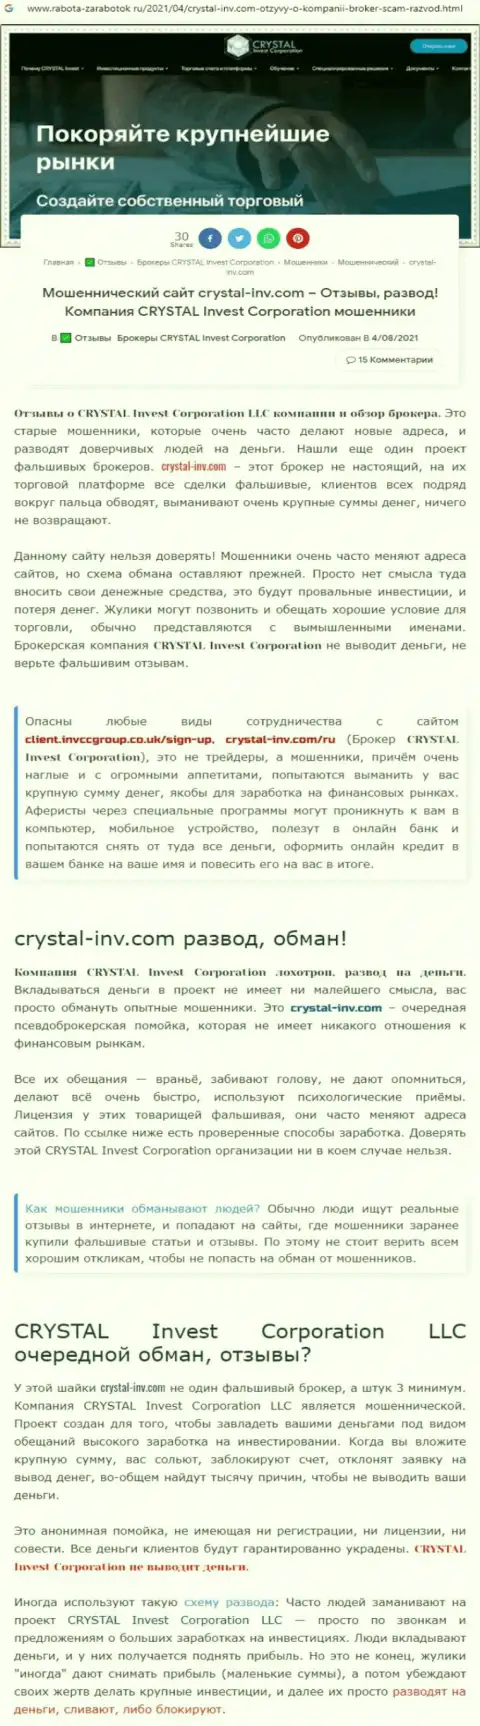 Материал, выводящий на чистую воду контору Crystal-Inv Com, взятый с онлайн-ресурса с обзорами мошеннических комбинаций различных компаний